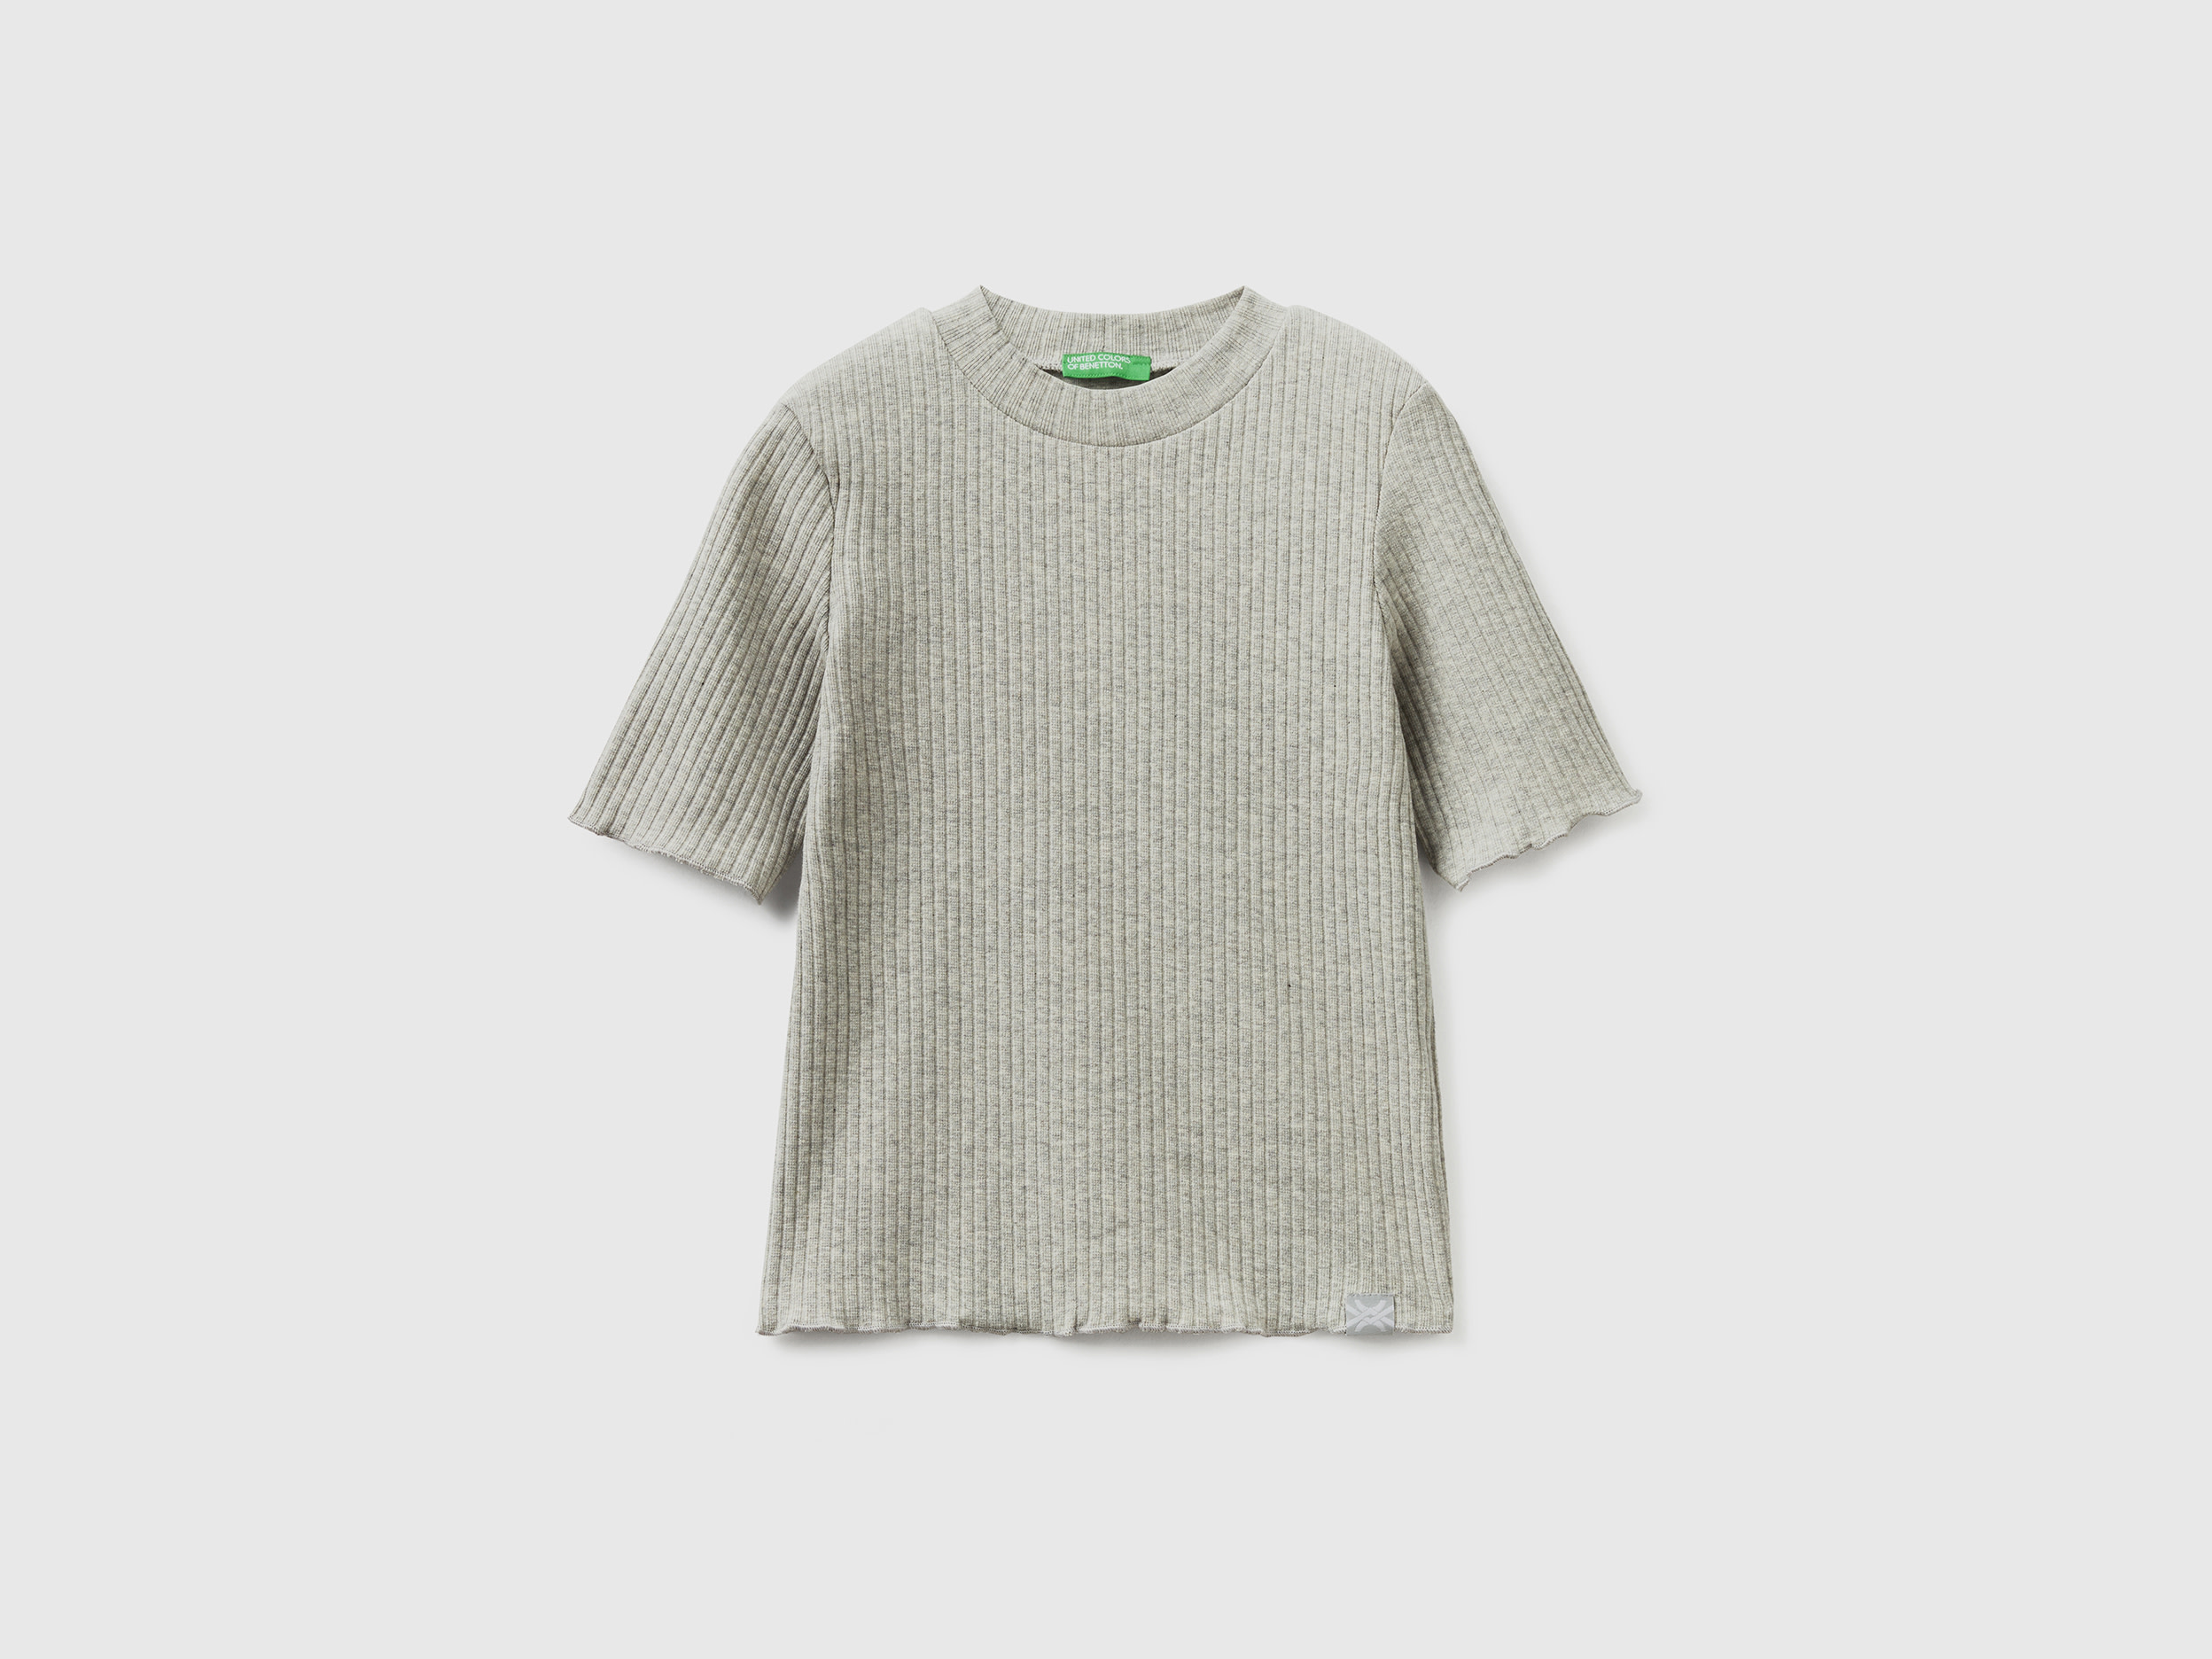 Benetton, Short Sleeve Turtleneck T-shirt, size XL, Light Gray, Kids